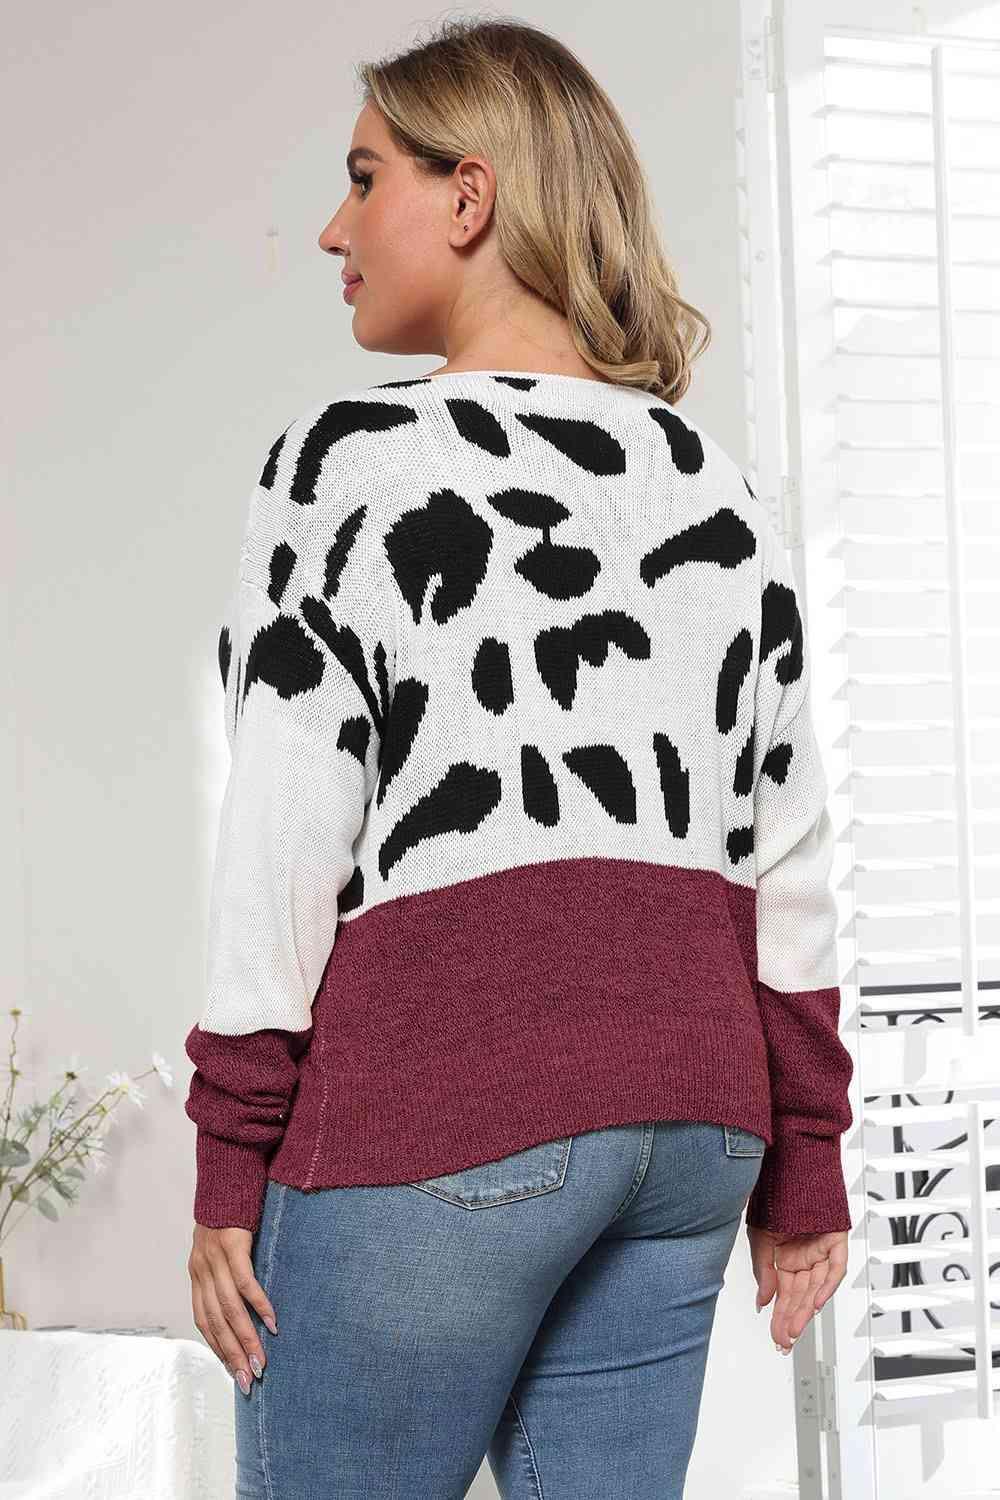 Flexile Long Sleeve Plus Size Leopard Sweater - MXSTUDIO.COM